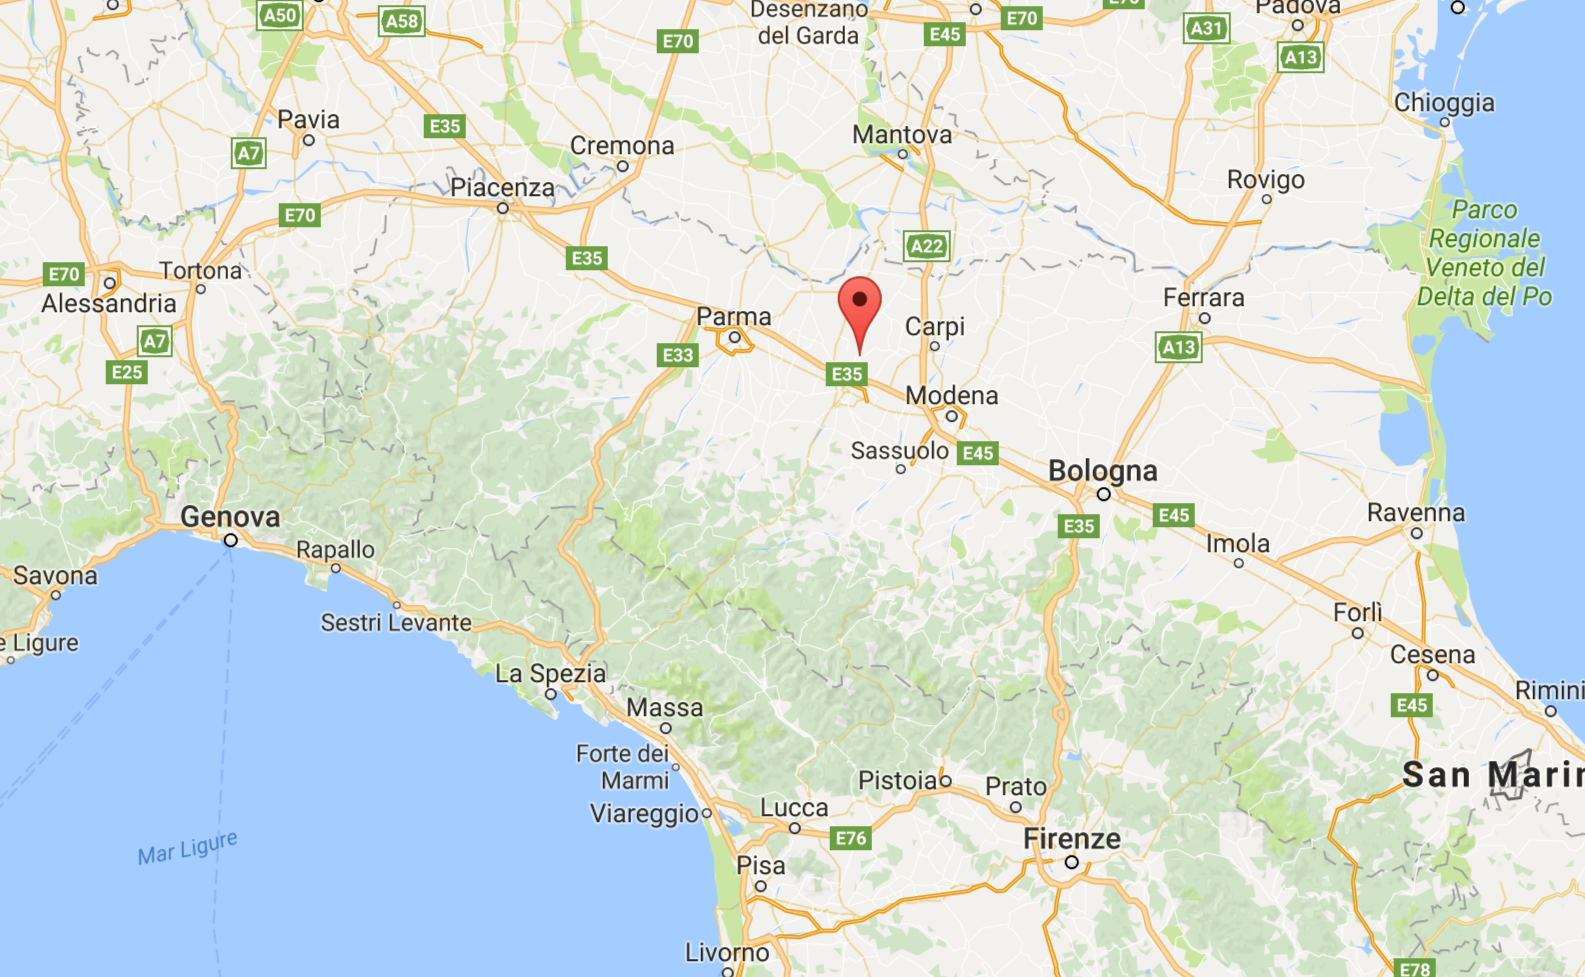 Scossa di terremoto di magnitudo 3.7 registrata questa mattina nella zona di Reggio Emilia